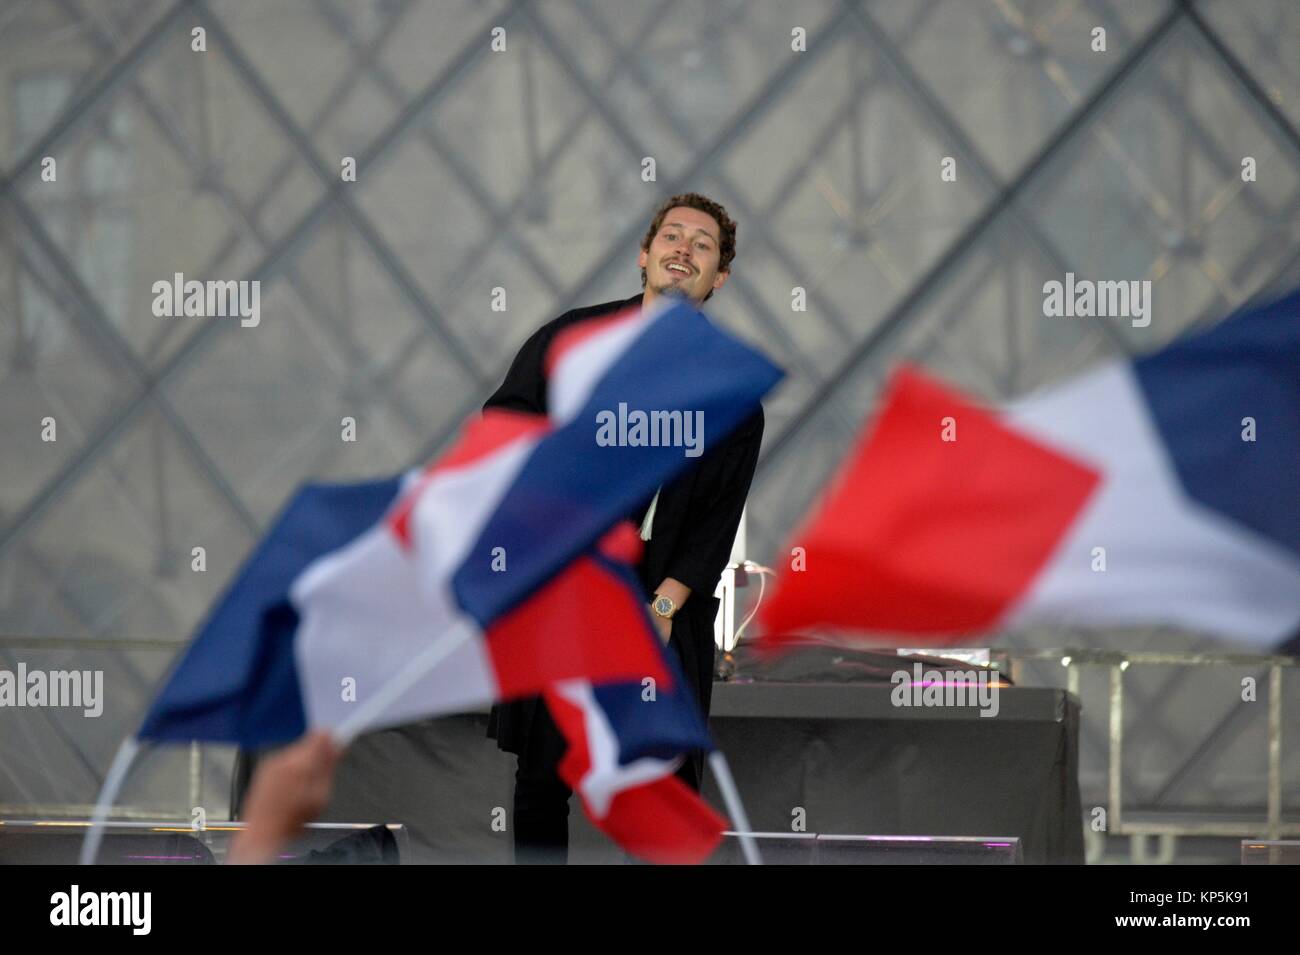 Le chanteur Cris Cab célébrer la victoire du nouveau président français Emmanuel Macron en dehors du musée du Louvre à Paris,France. Banque D'Images